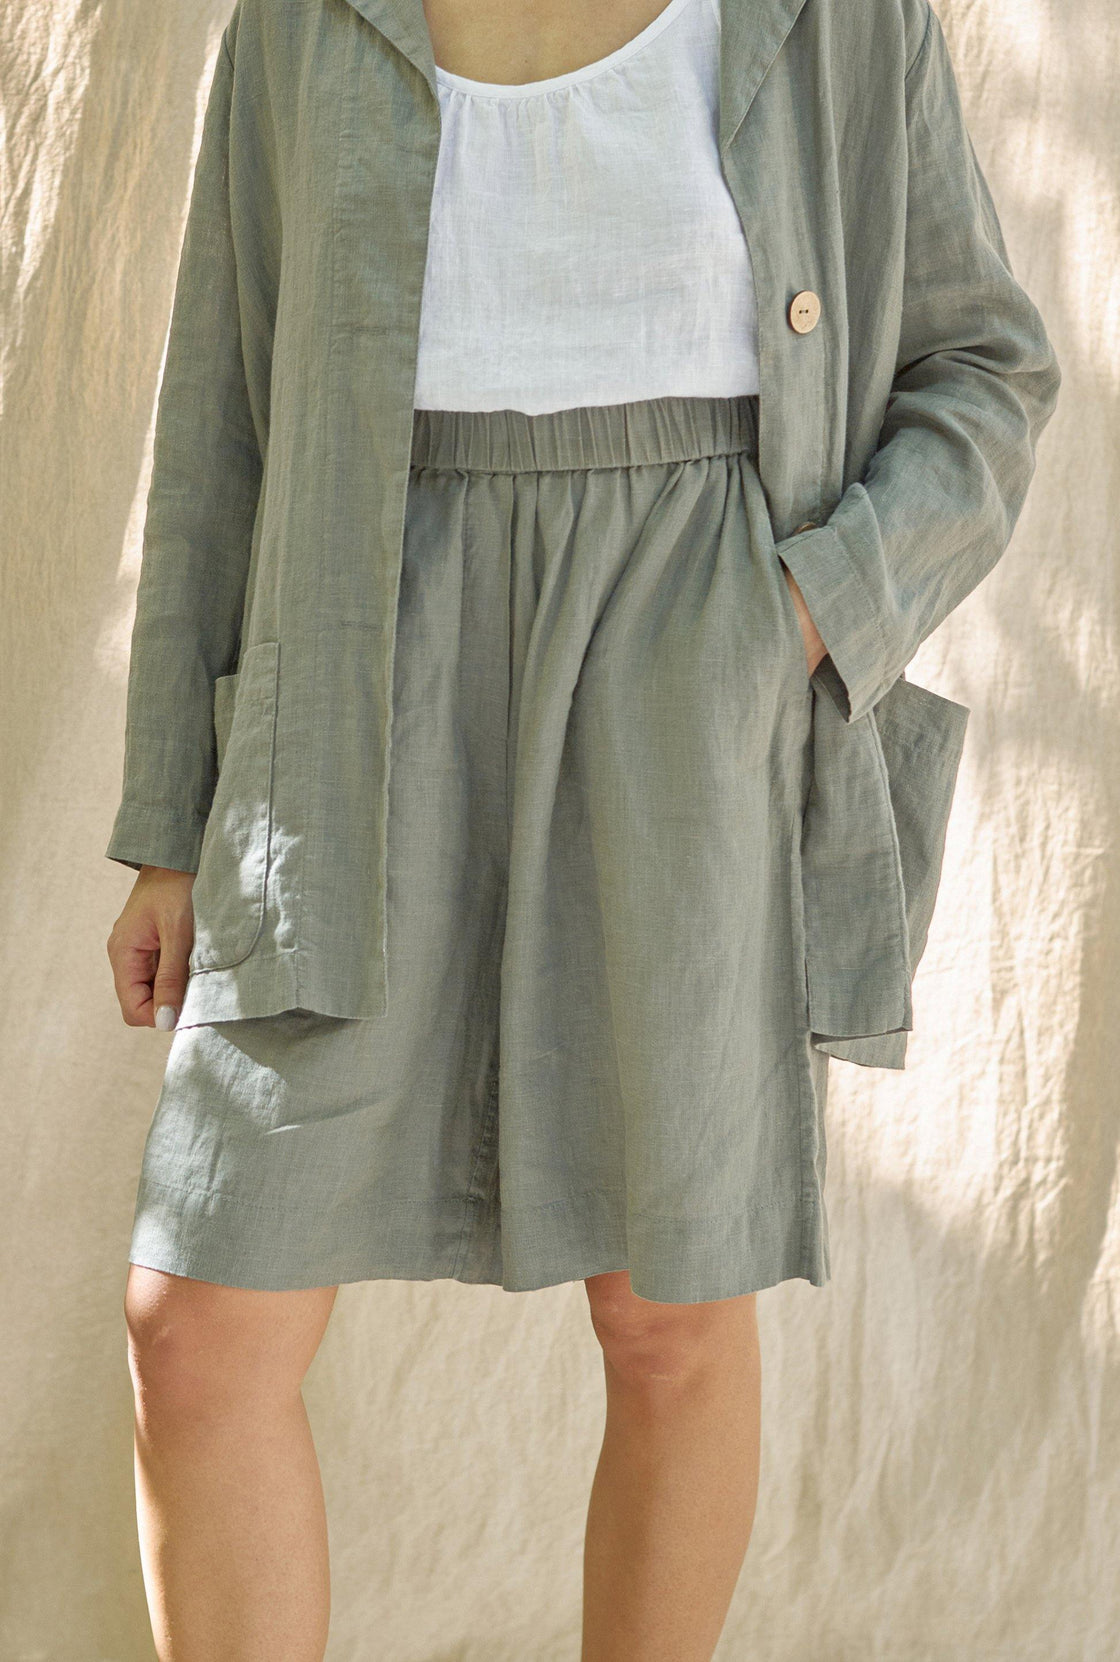 womens linen shorts - Manufacture de Lin